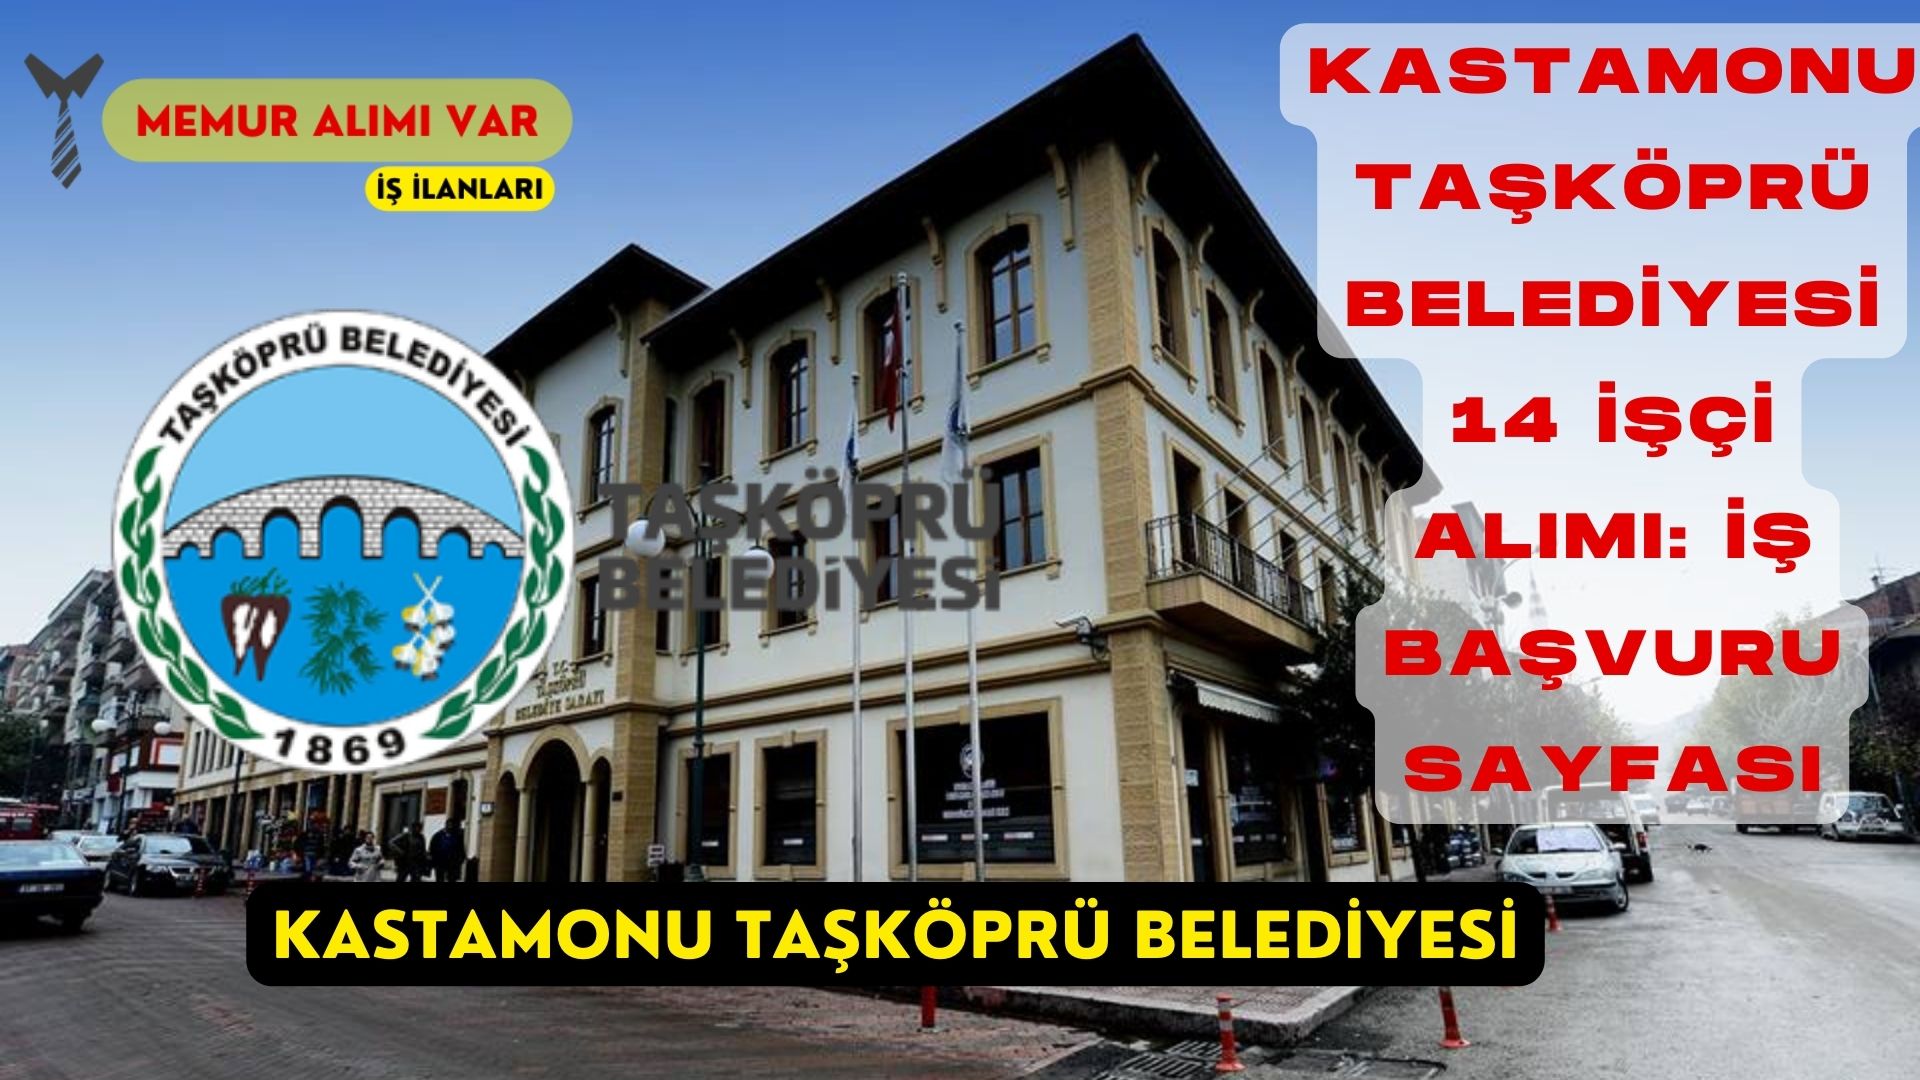 Kastamonu Taşköprü Belediyesi 14 İşçi Alımı: İş Başvuru Sayfası